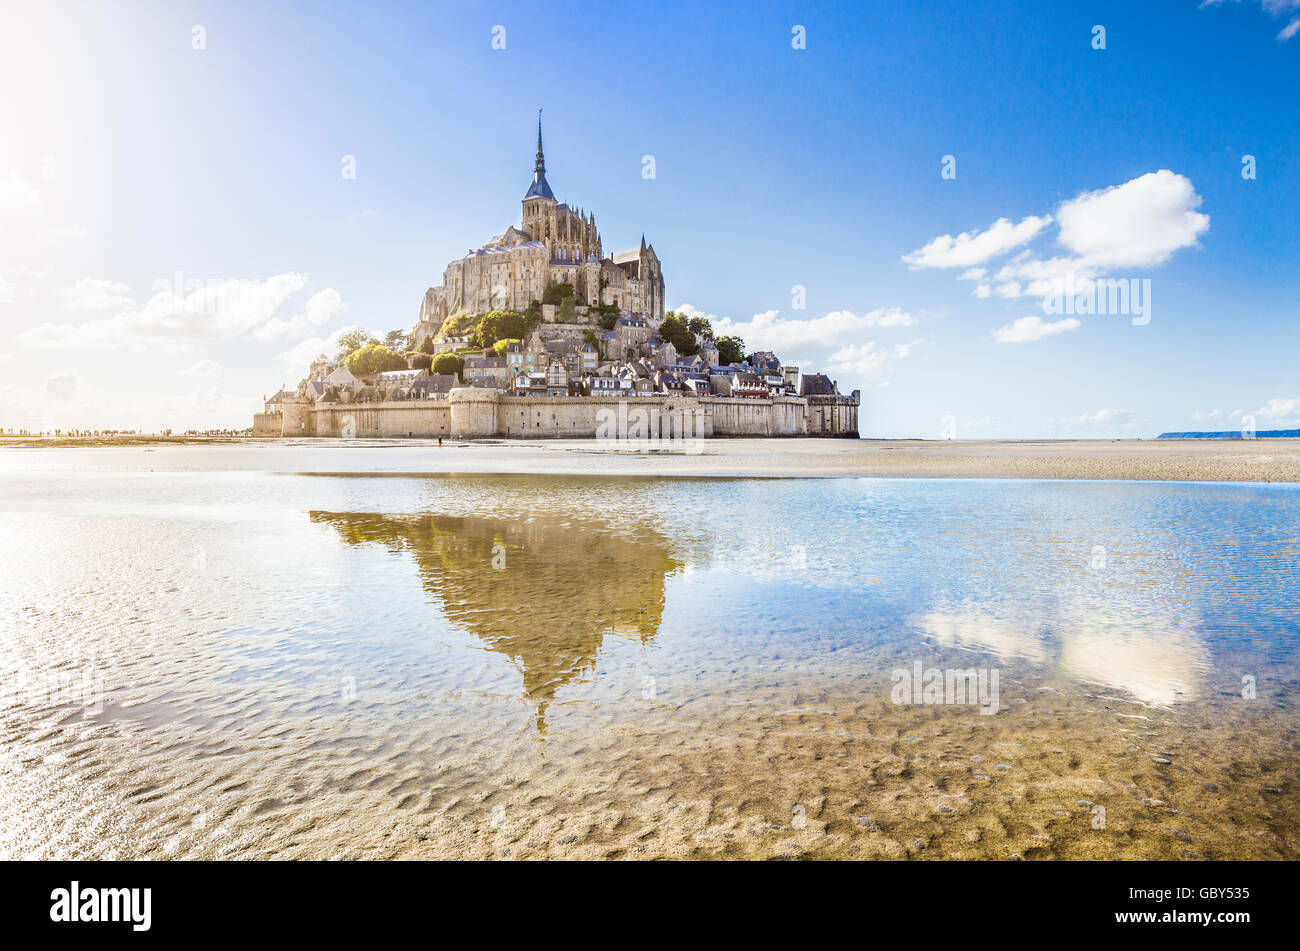 Visualizzazione classica del famoso Mont Saint Michel isola di marea in una giornata di sole con cielo blu e nuvole, Normandia, Francia settentrionale Foto Stock